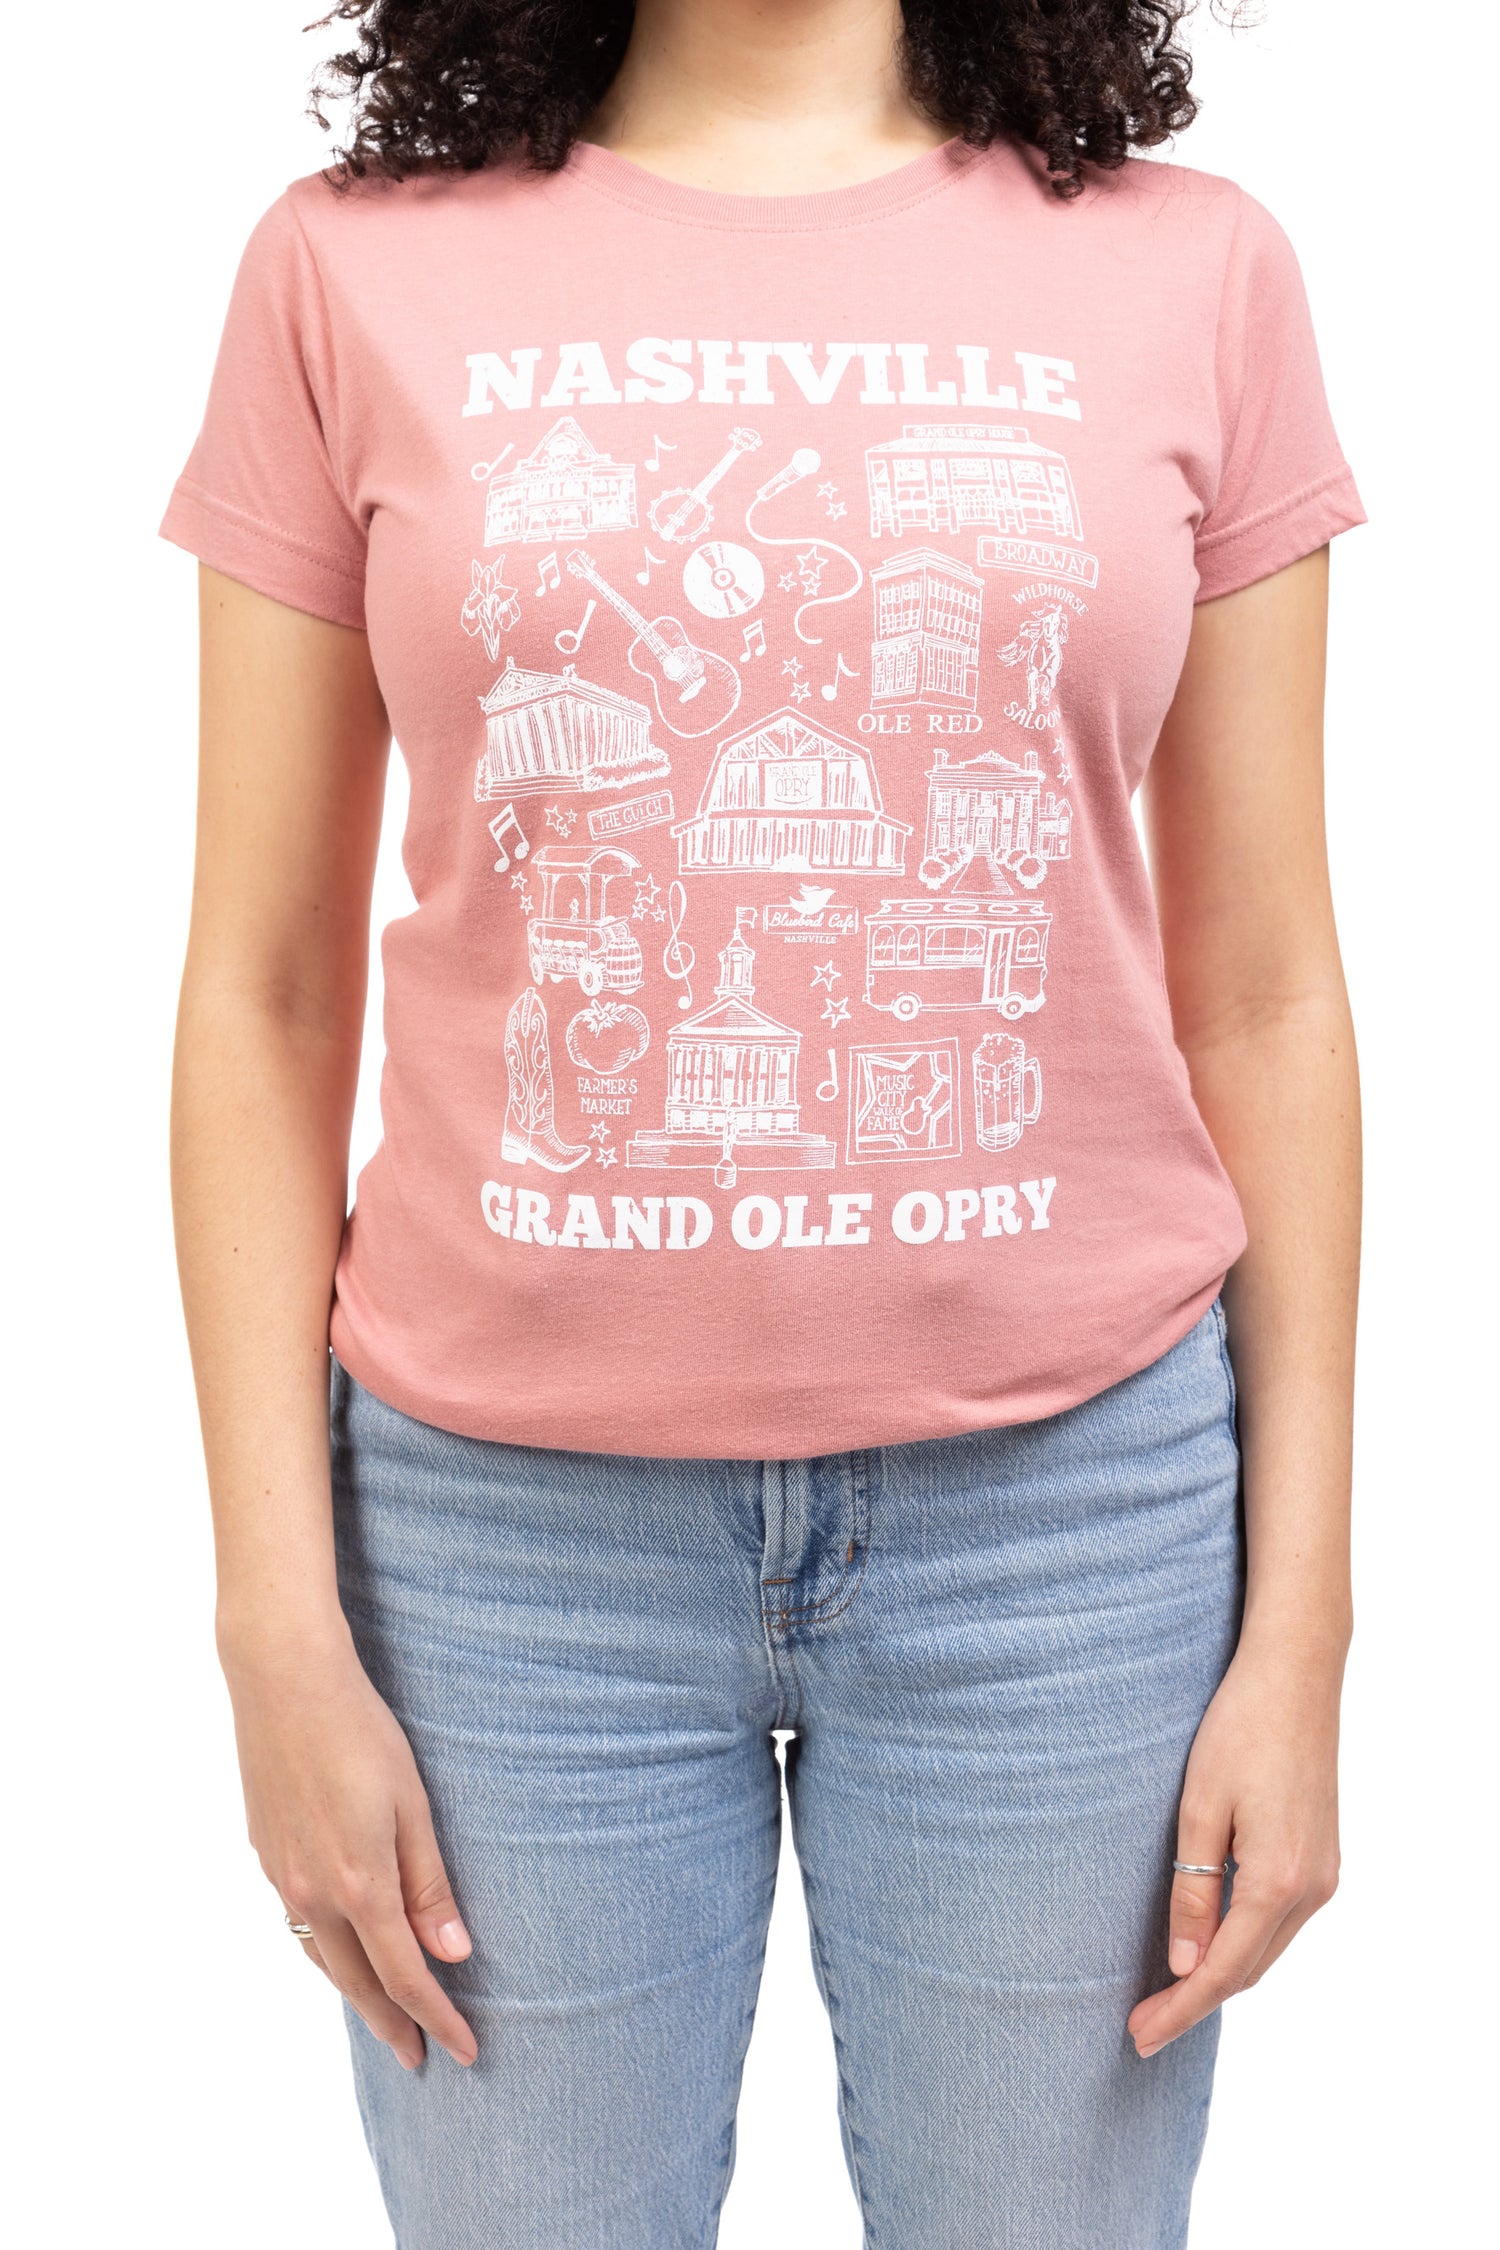 Opry Women's Nashville Map T-Shirt